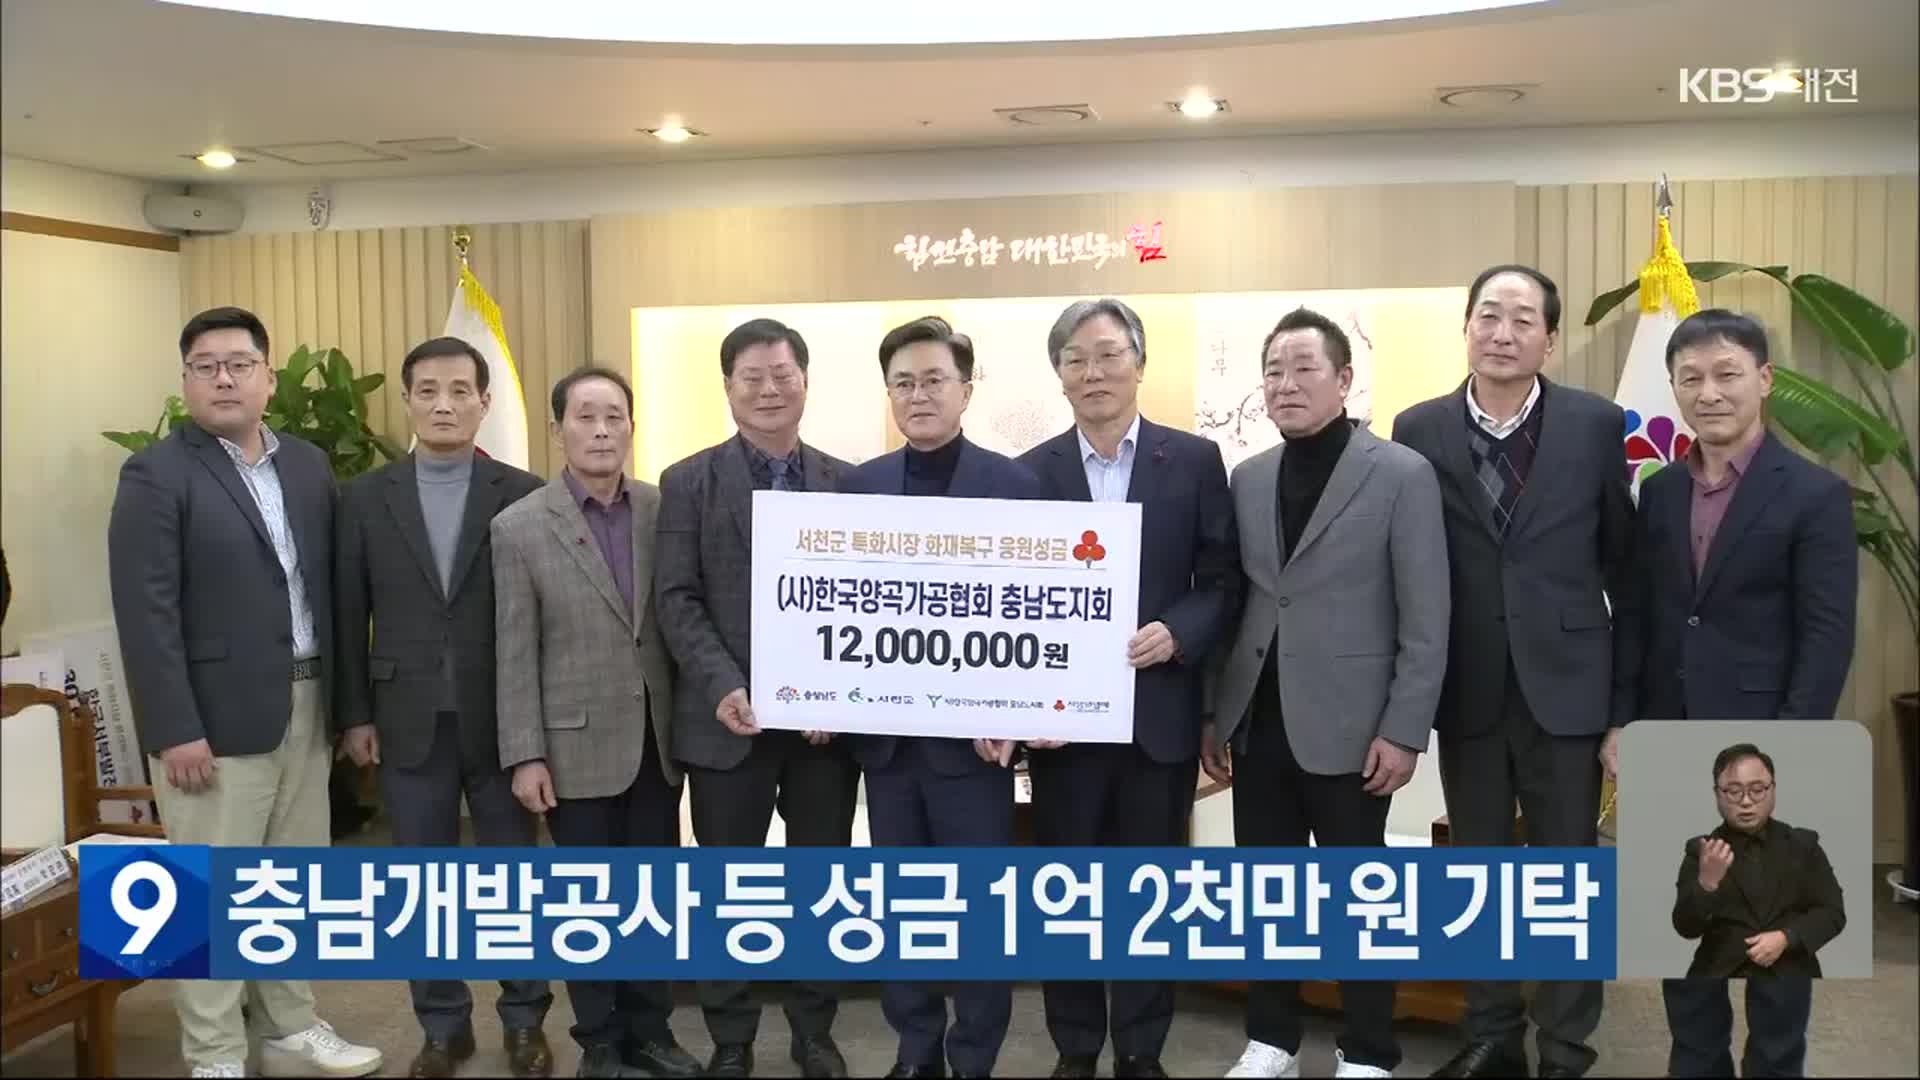 충남개발공사 등 성금 1억 2천만 원 기탁